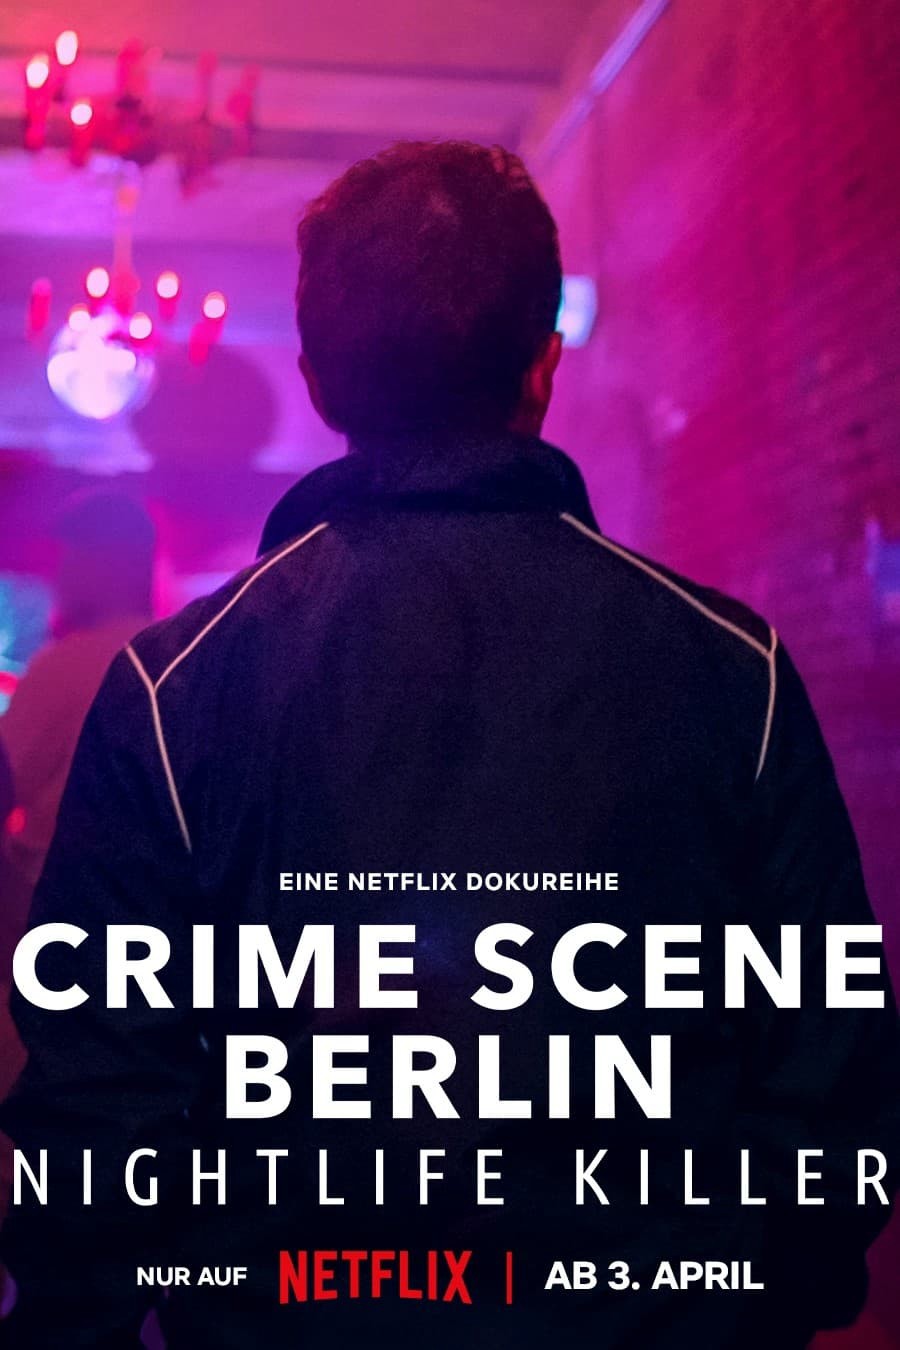 Hiện trường vụ án Berlin: Kẻ sát nhân về đêm - Hiện trường vụ án Berlin: Kẻ sát nhân về đêm